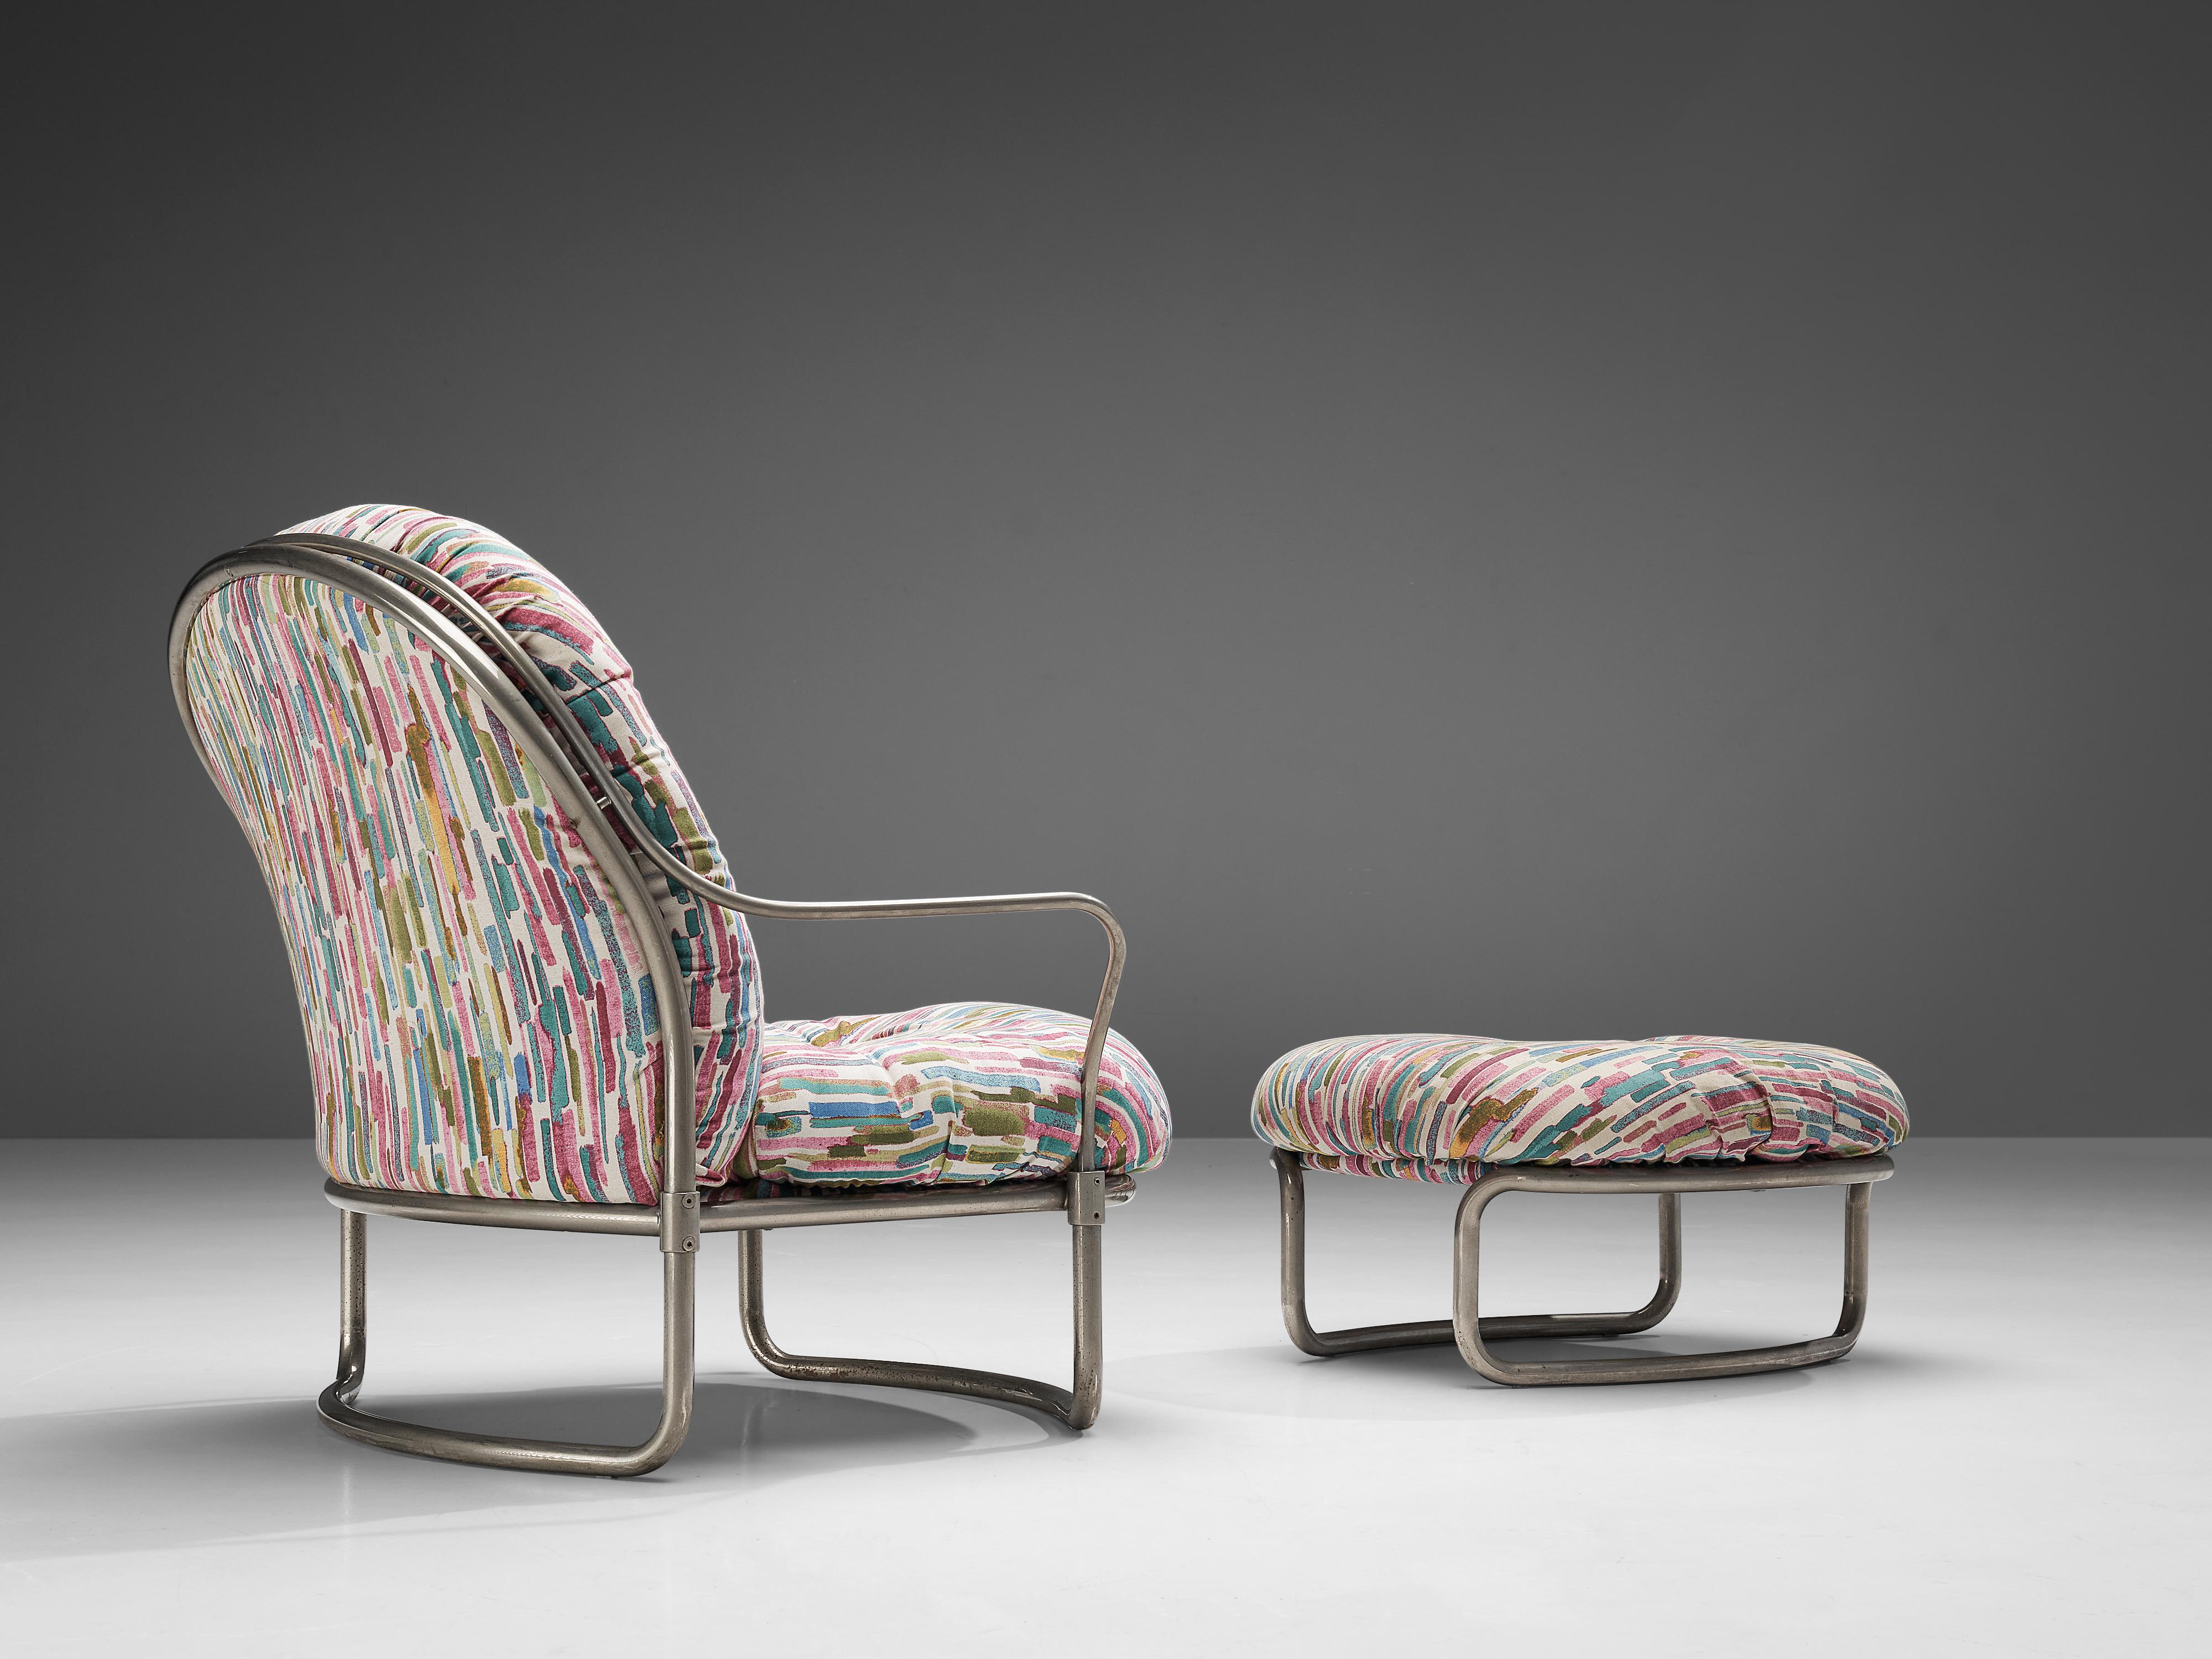 Carlo de Carli, chaise longue modèle '915' avec ottoman, métal, tissu, Italie, 1969.

Élégant fauteuil tubulaire conçu par Carlo di Carli en 1969, fabriqué par Cinova, Italie. La chaise est dotée d'un cadre incurvé et chromé qui accueille les